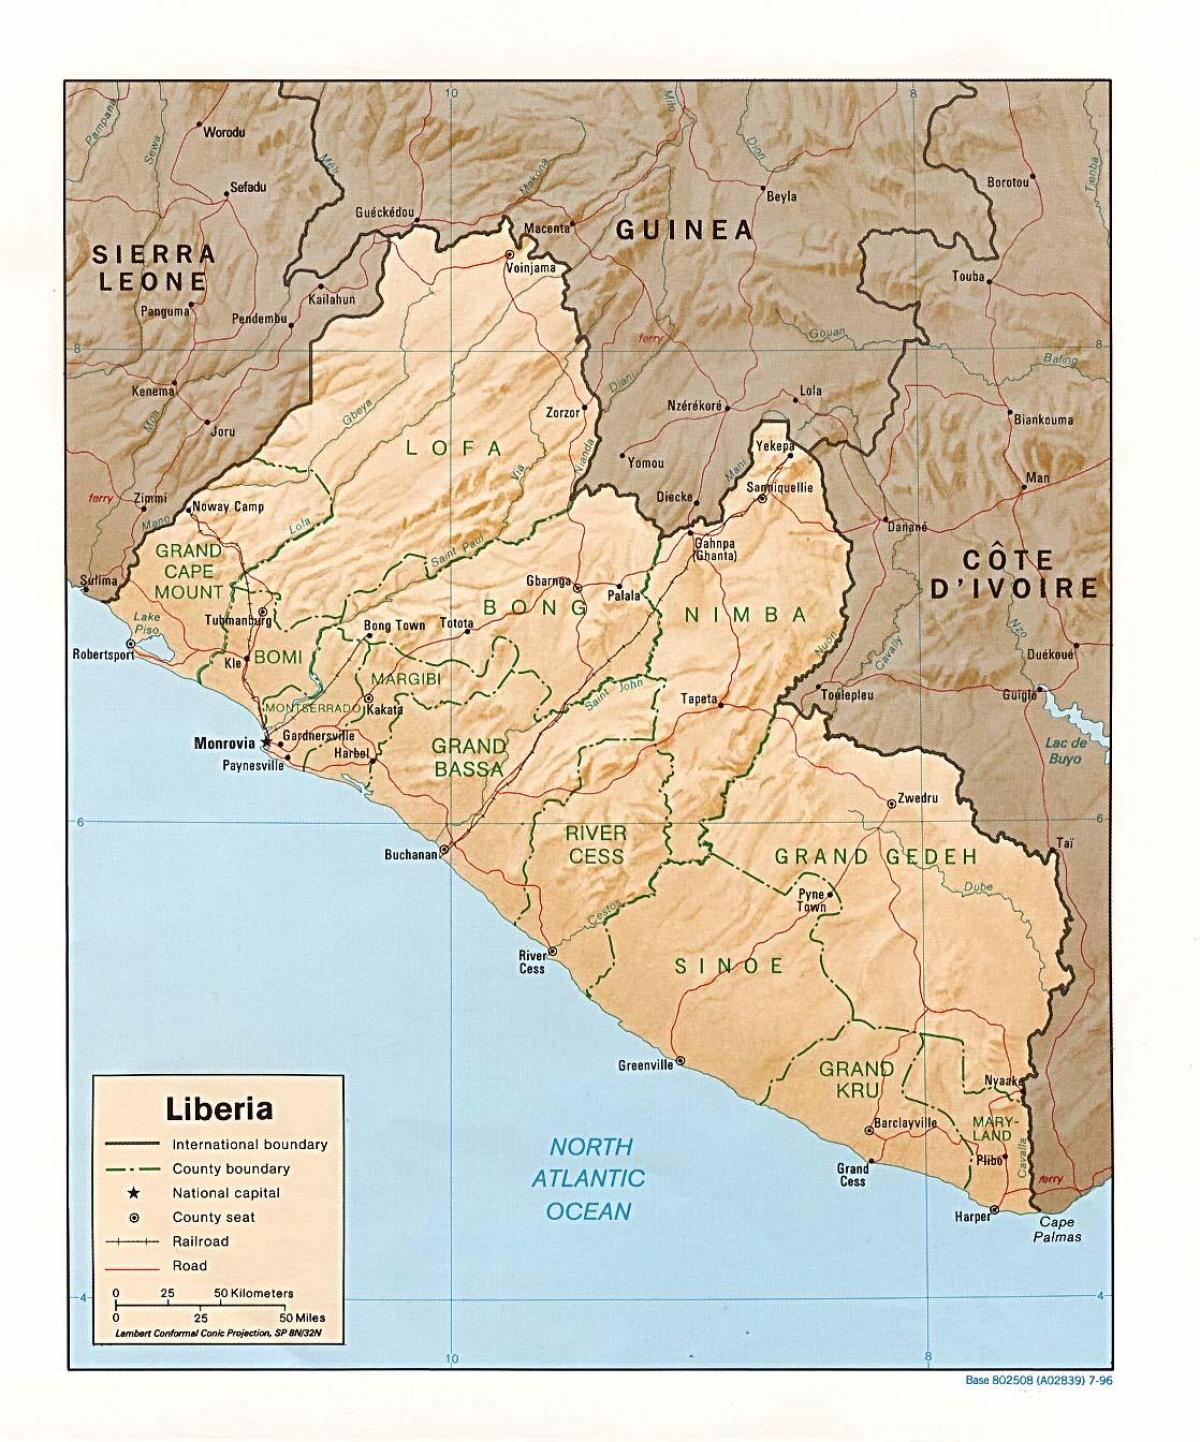 нацртати мапу терена Либерија